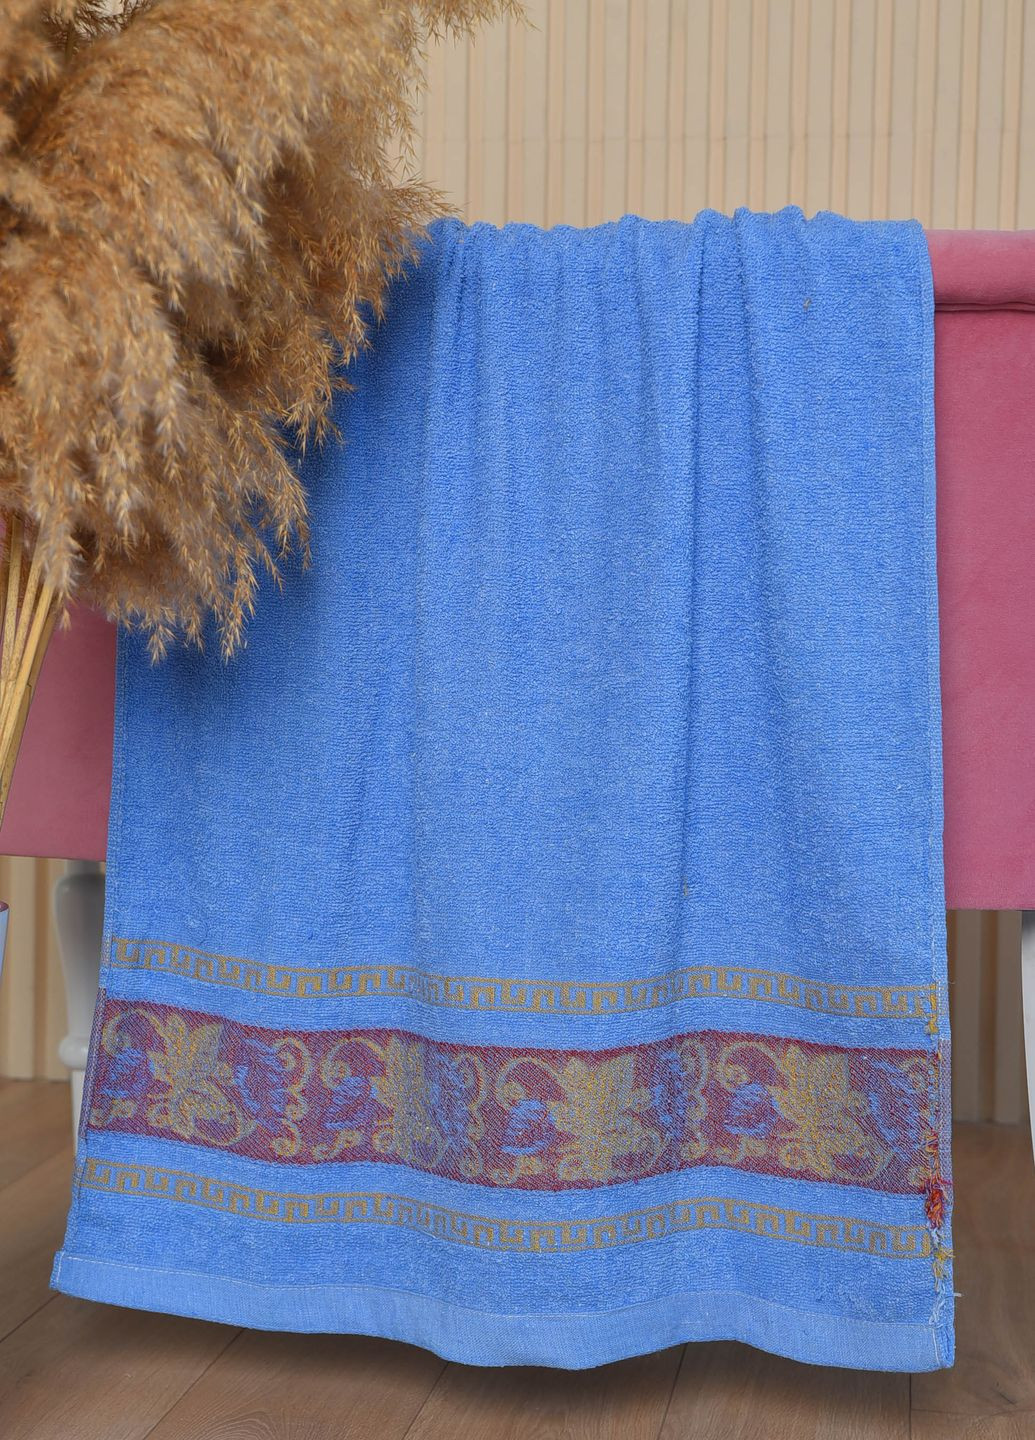 Let's Shop полотенце банное махровое синего цвета цветочный синий производство - Турция